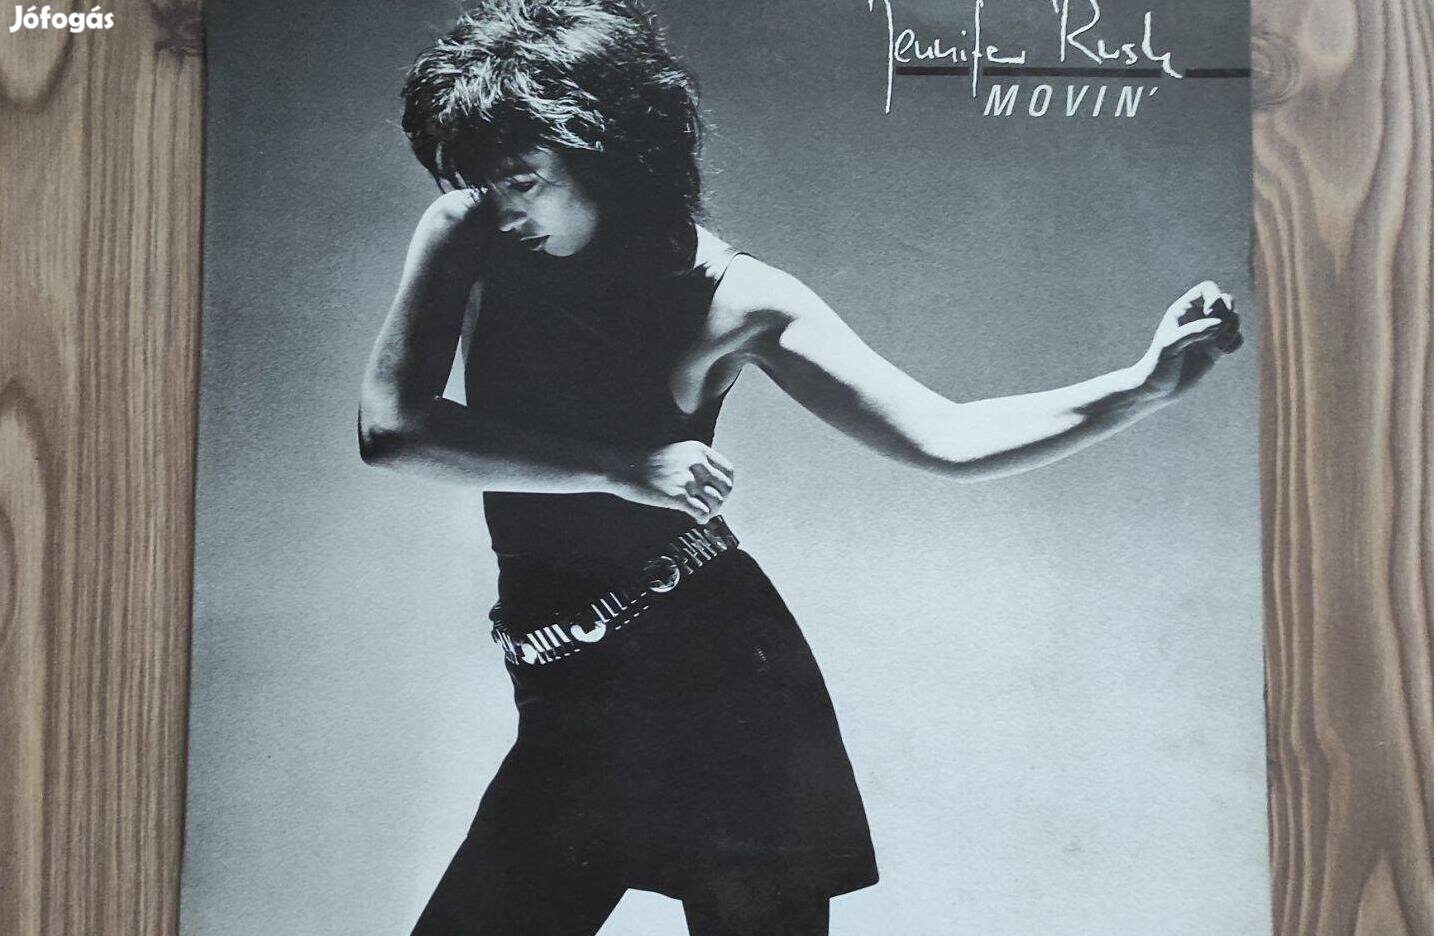 Jennifer Rush - Movin' LP bakelit lemez